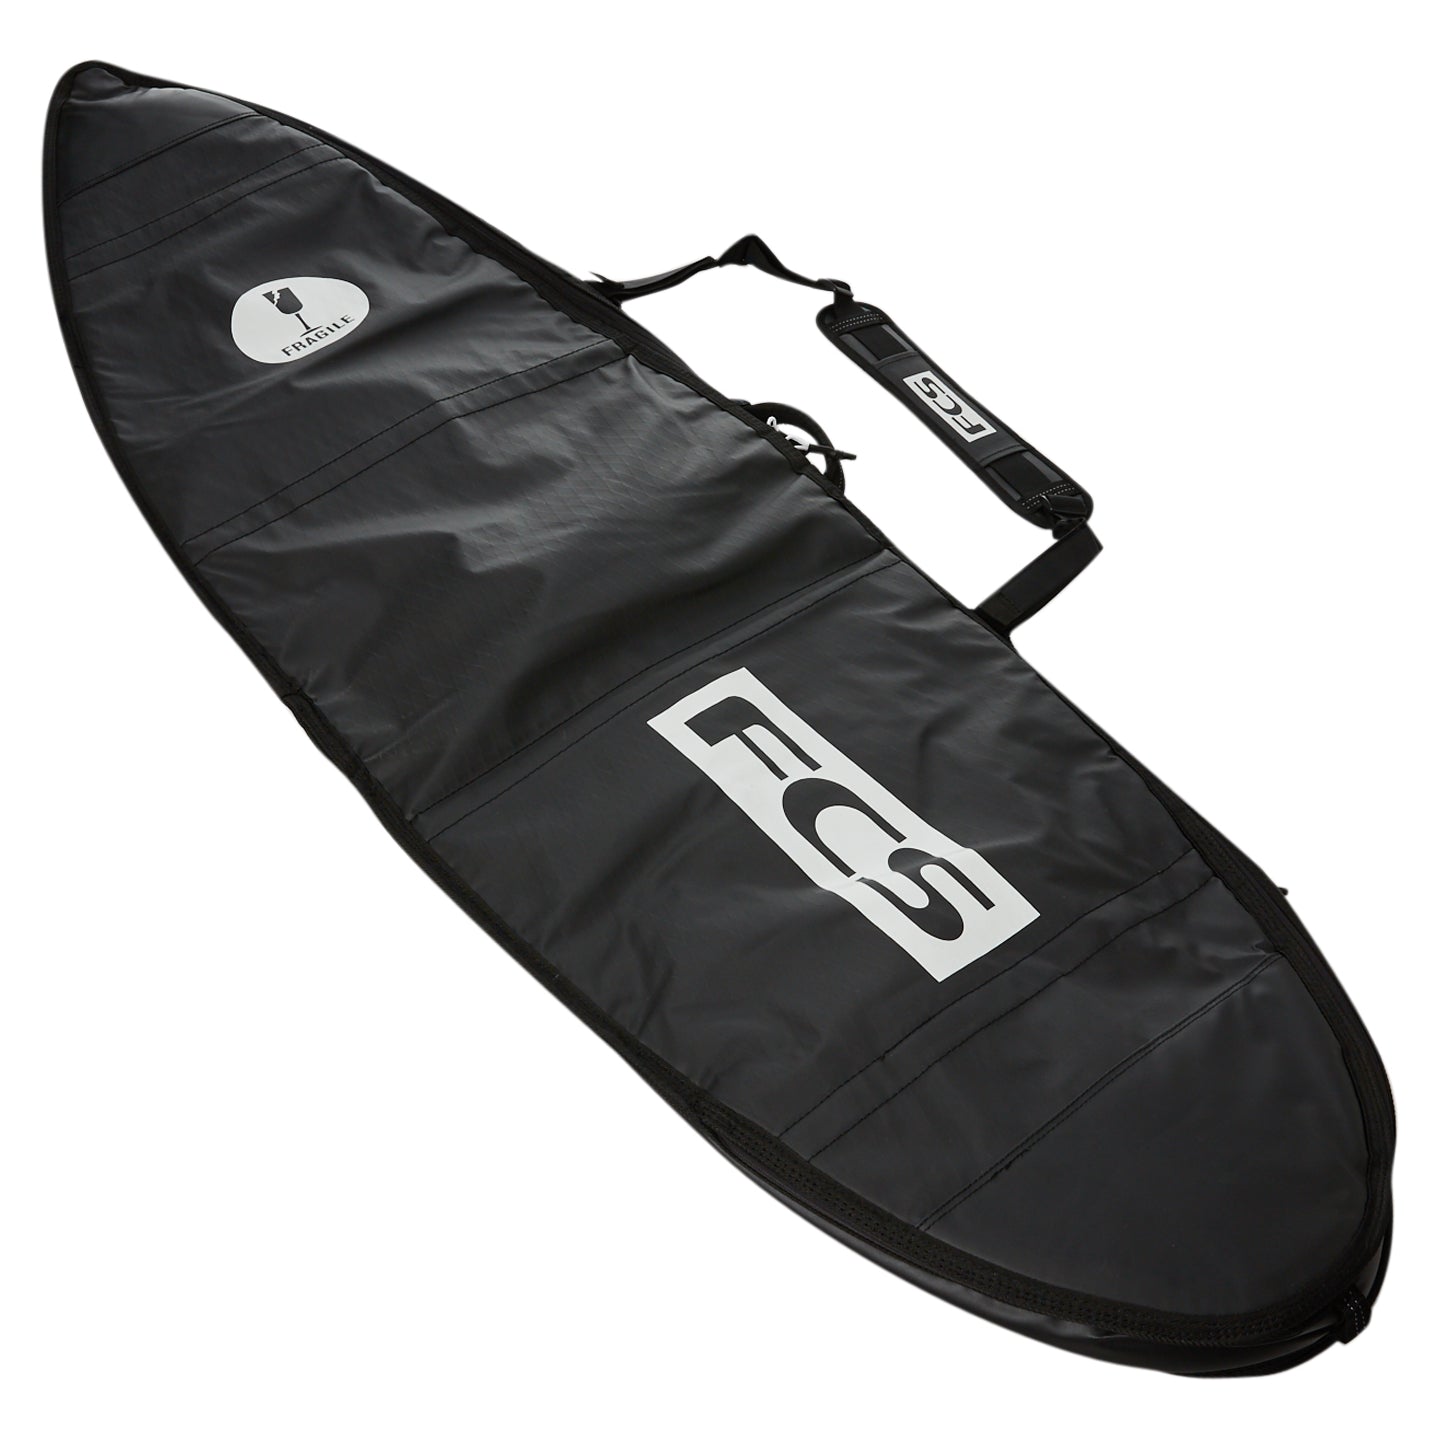 FCS Travel 1 Funboard Boardbag Black-Grey 6ft7in